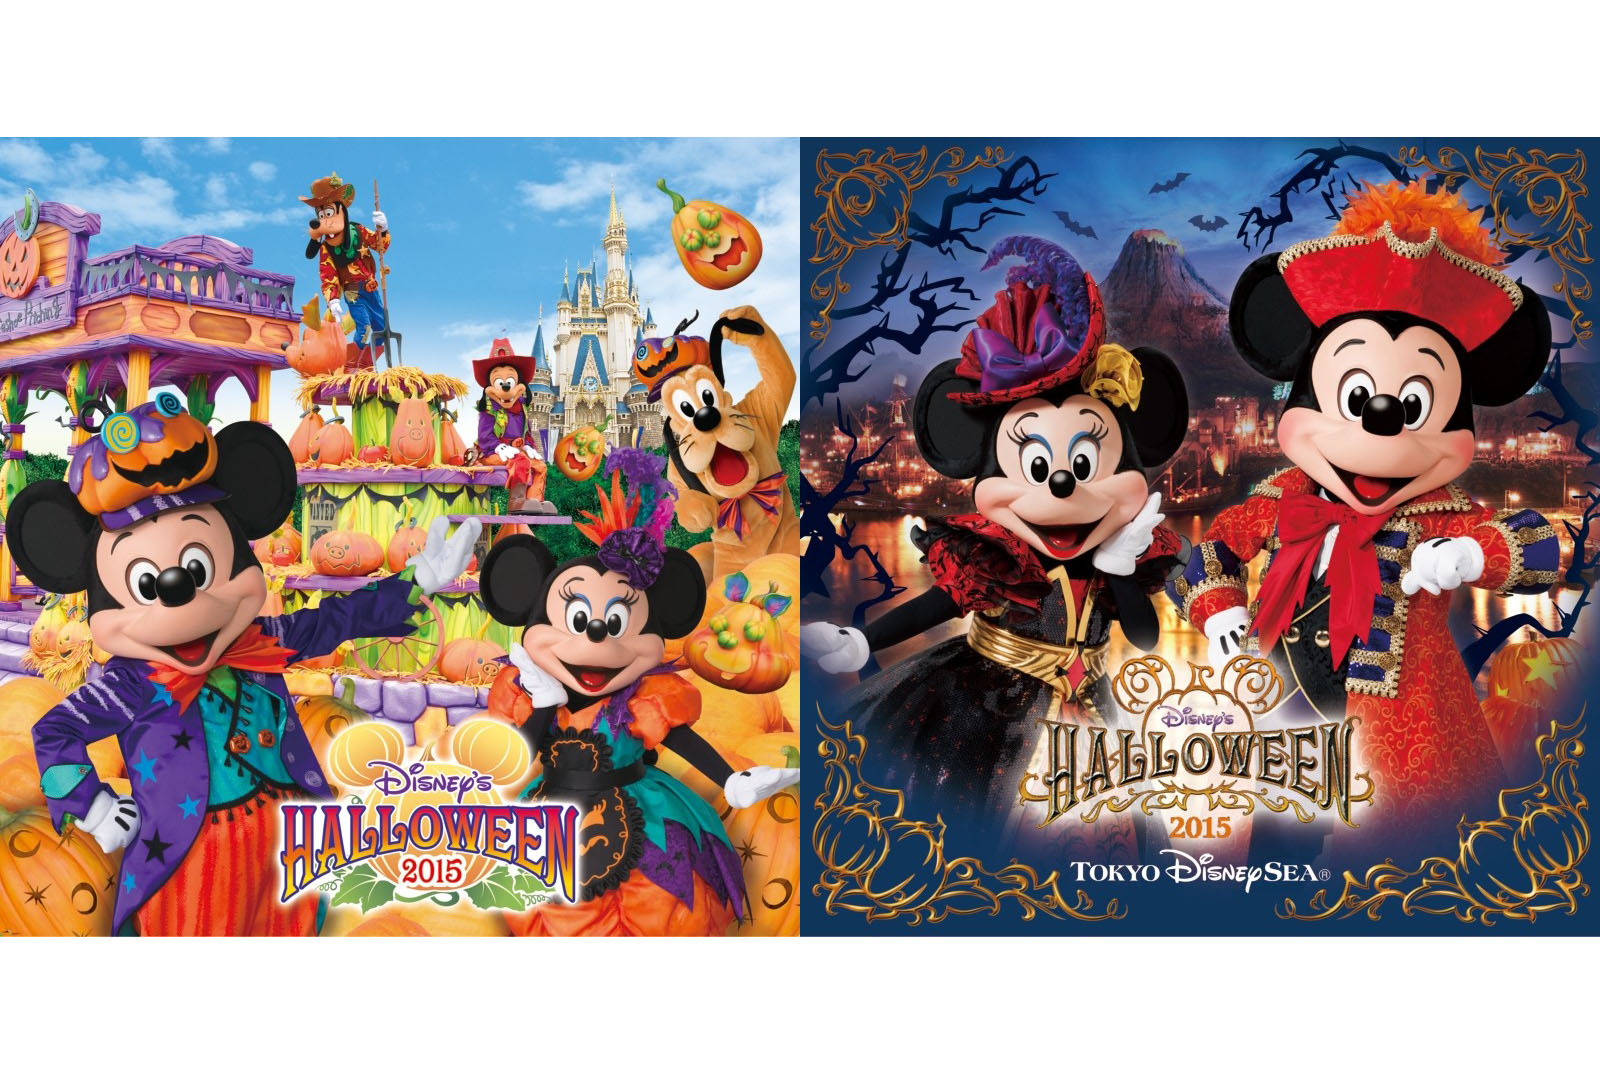 ディズニー ハロウィーン15 ショー パレード音源cdは15年9月30日発売 Disney Colors Blog